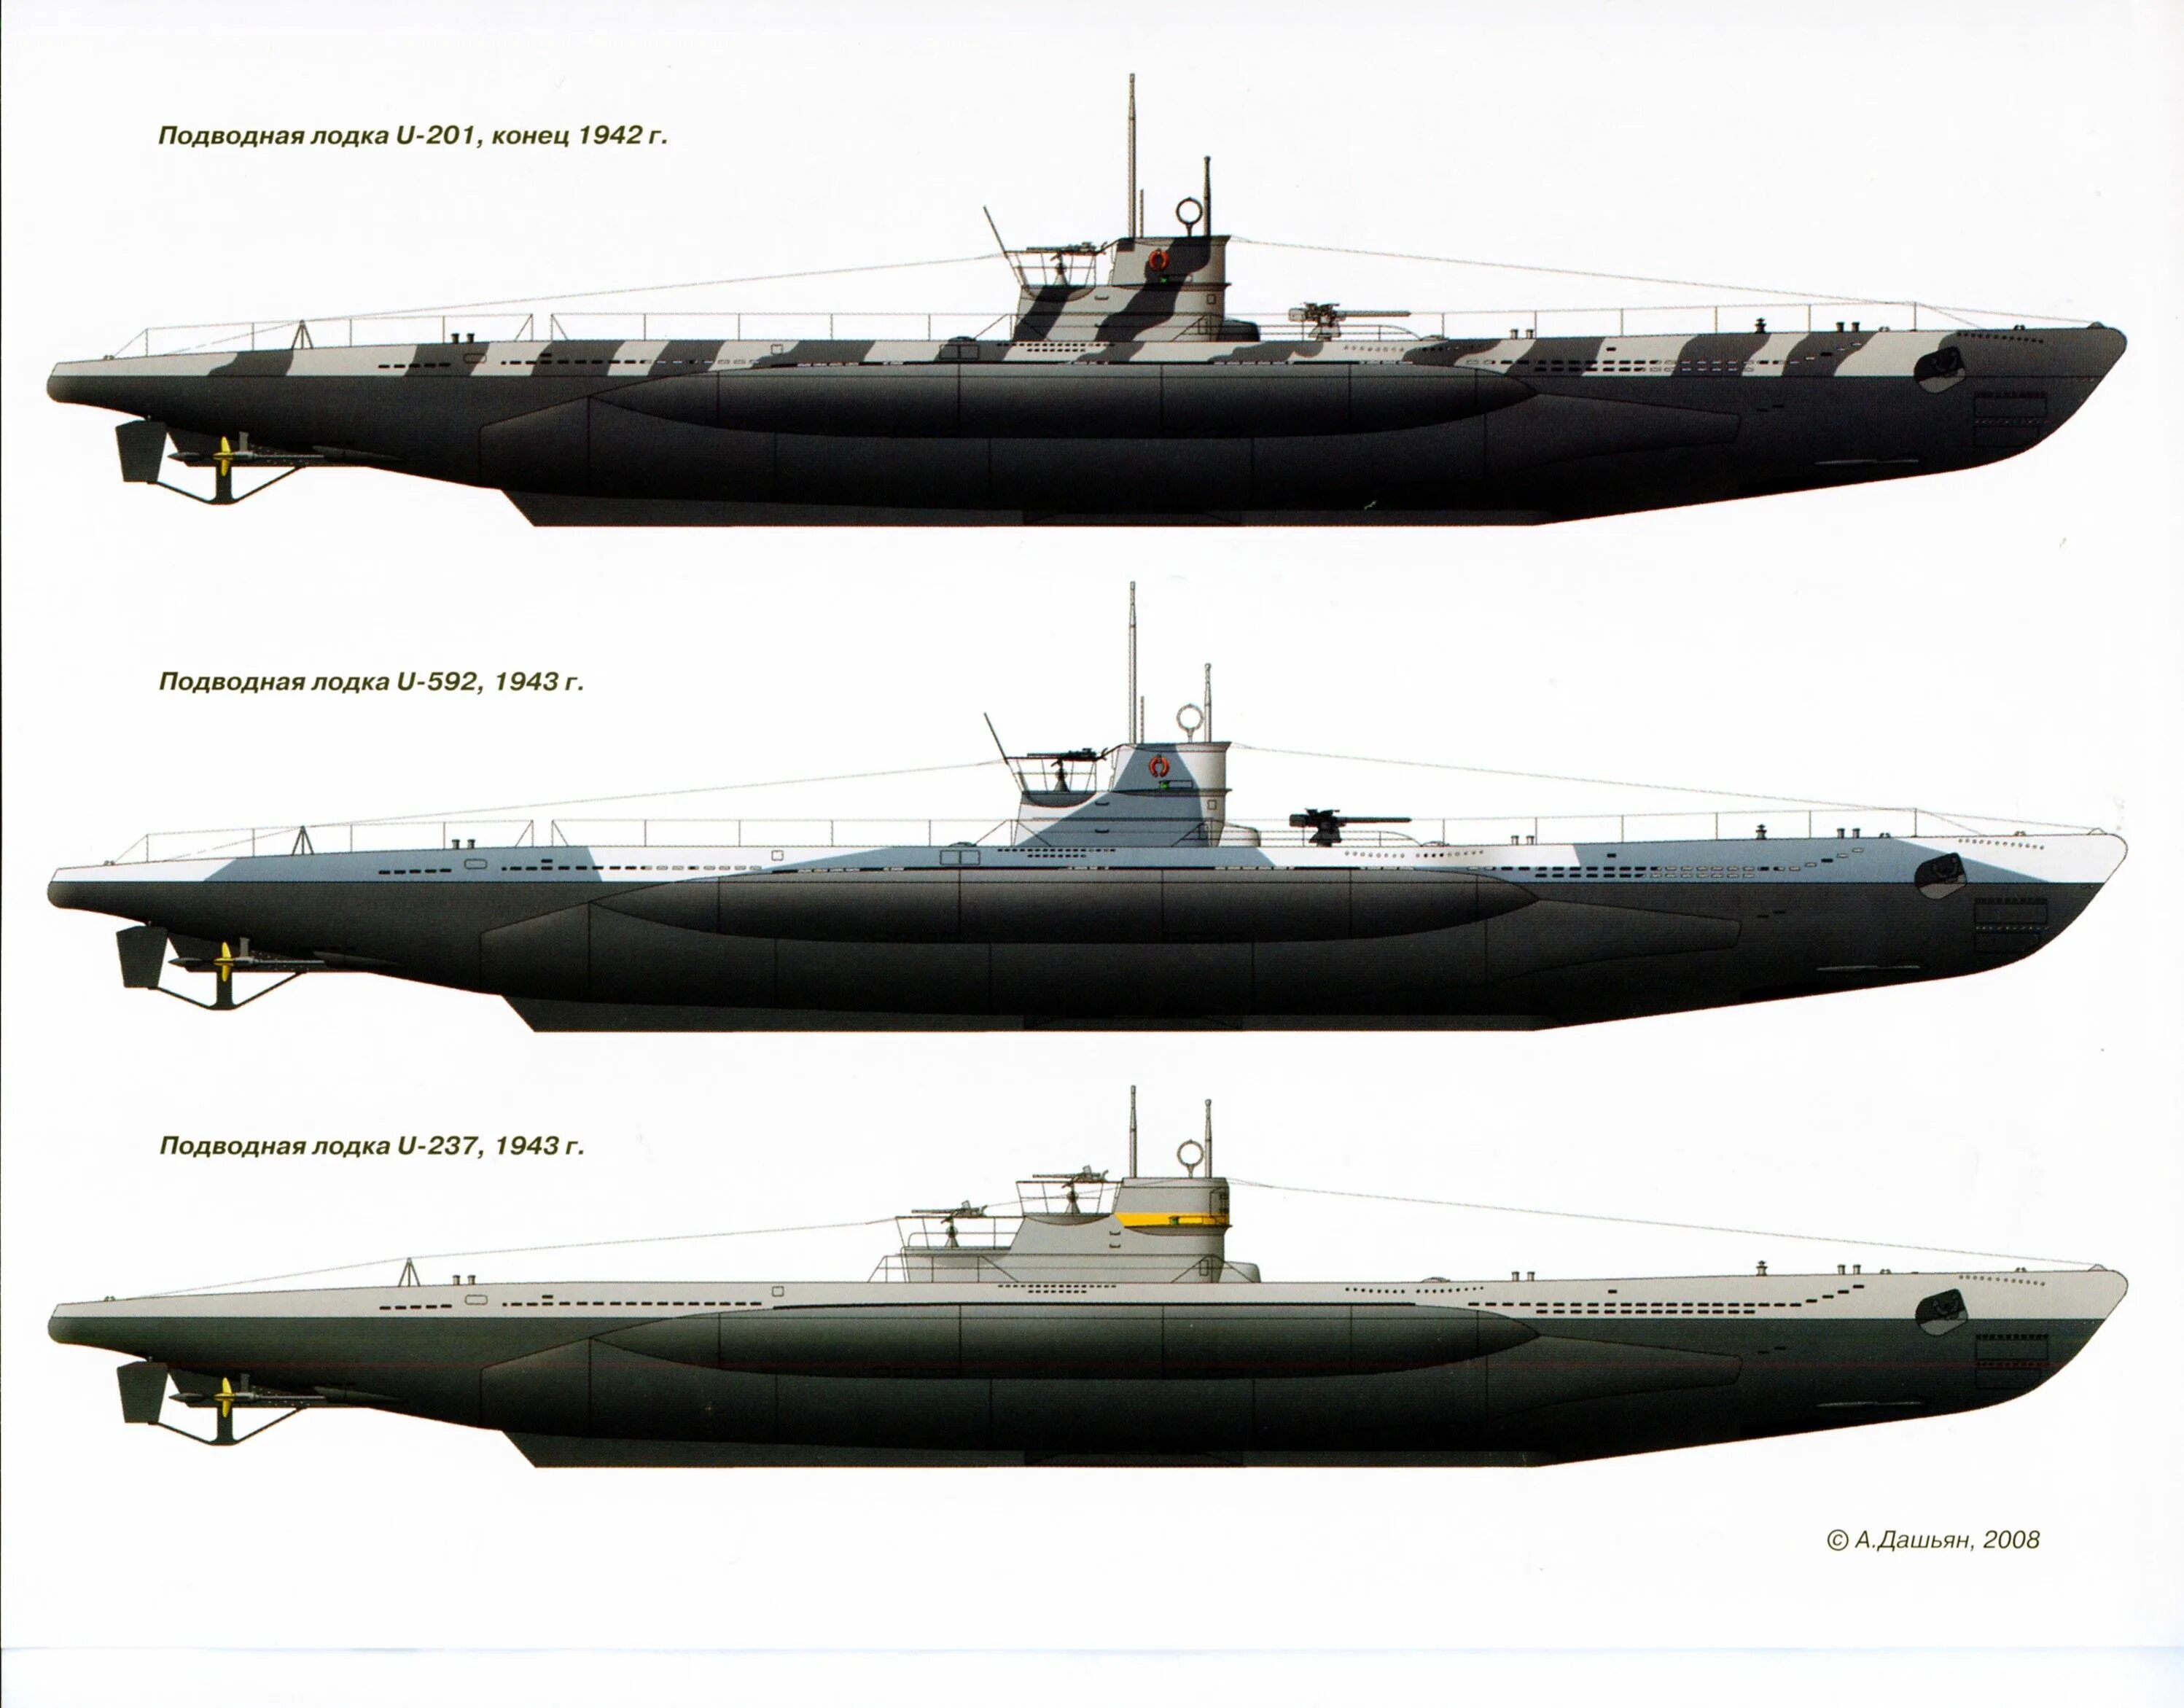 Тип 7 77. Подводные лодки Кригсмарине Тип 9. Подводные лодки Кригсмарине второй мировой войны. U-Boat,лодки Кригсмарине. U-Boat подлодки типа 7с.